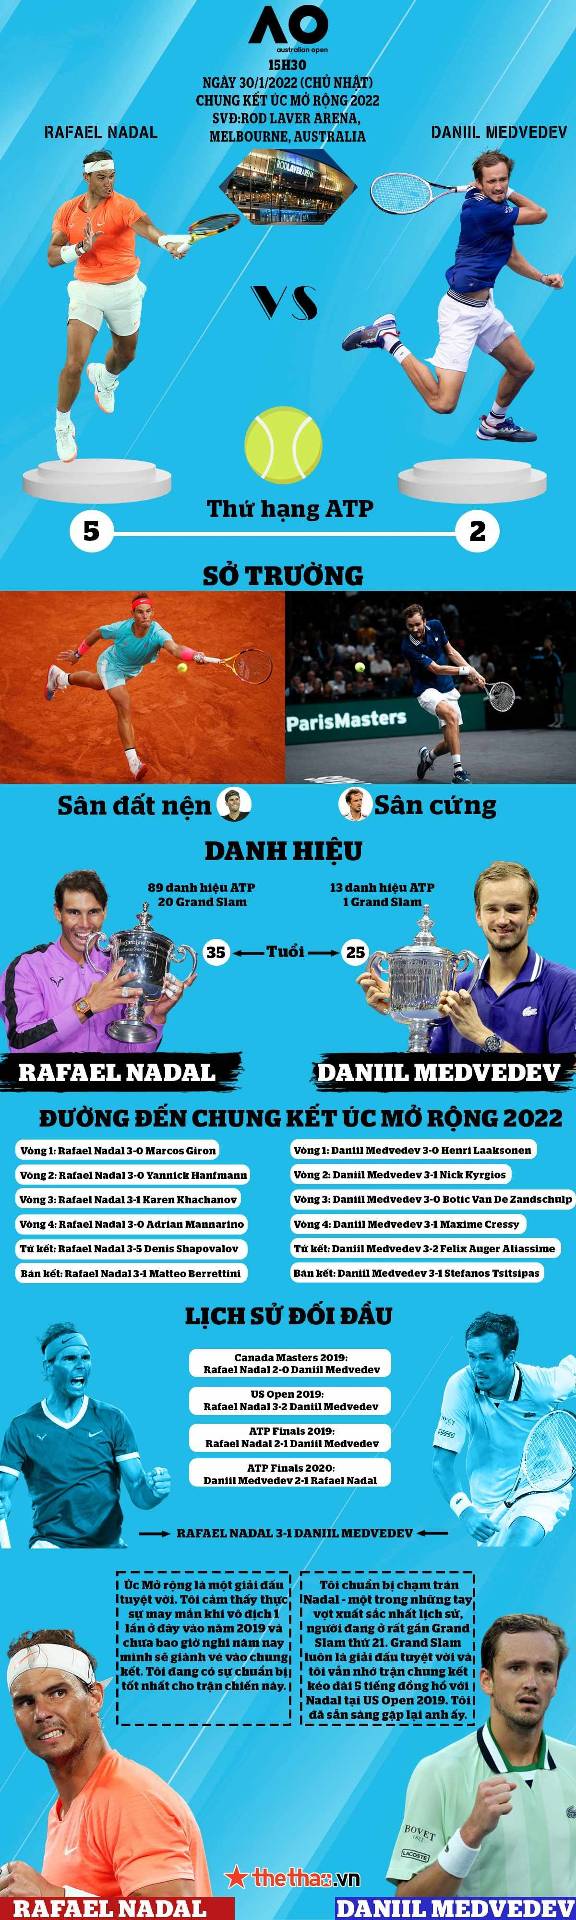 [INFOGRAPHIC] Chung kết Úc Mở rộng 2022 - Nadal vs Medvedev: Cuộc chiến 2 thế hệ - Ảnh 1